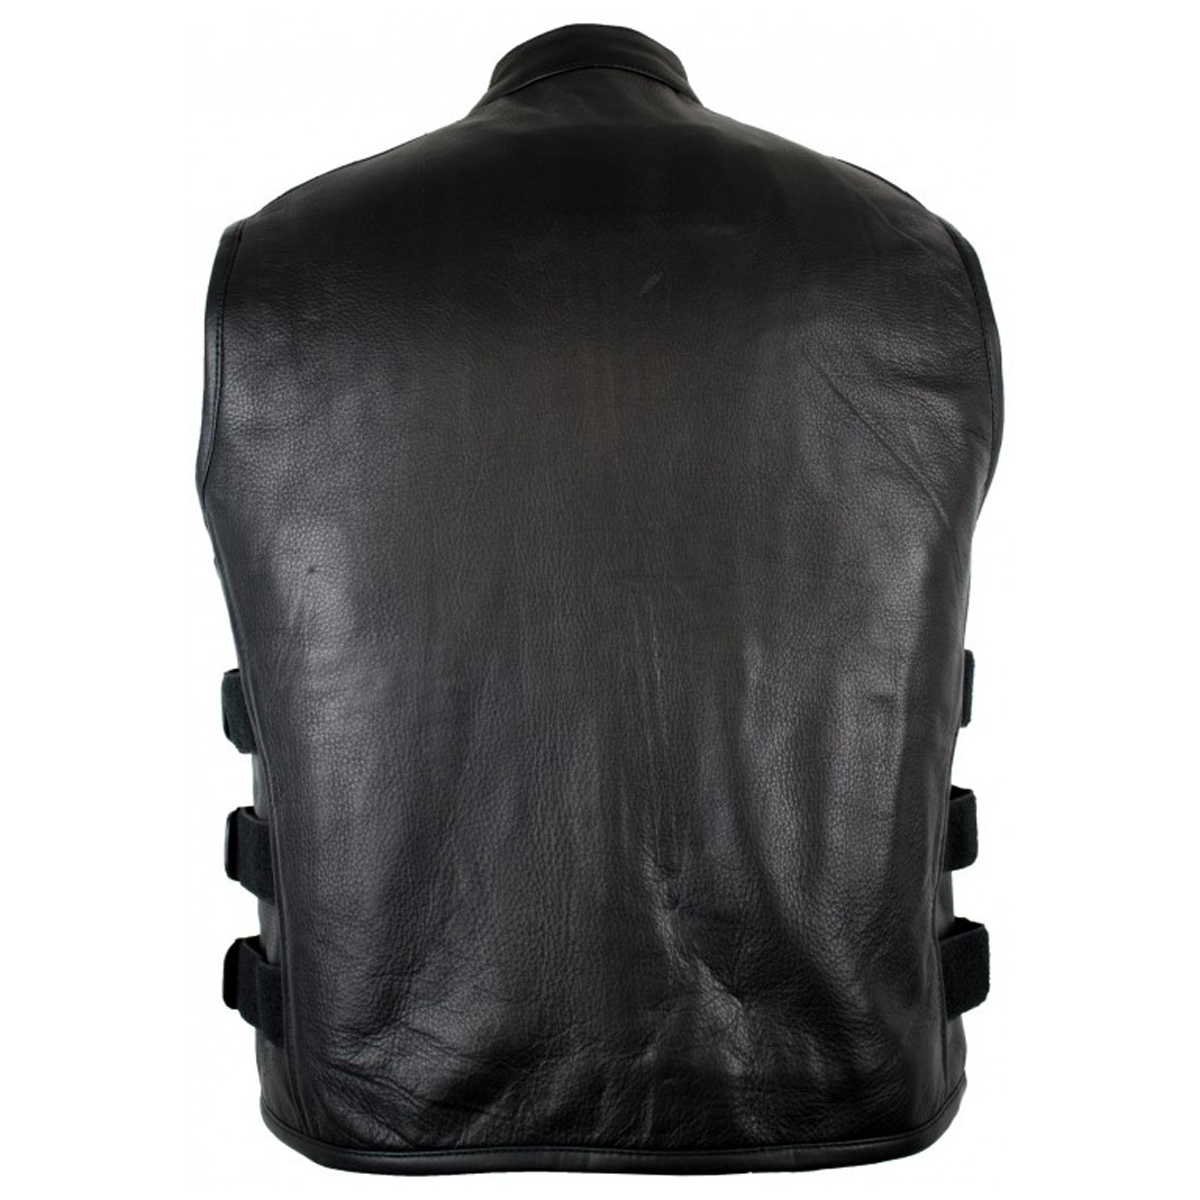 Men's Genuine Cow Leather SWAT Bulletproof Style Motorcycle Waistcoat ...